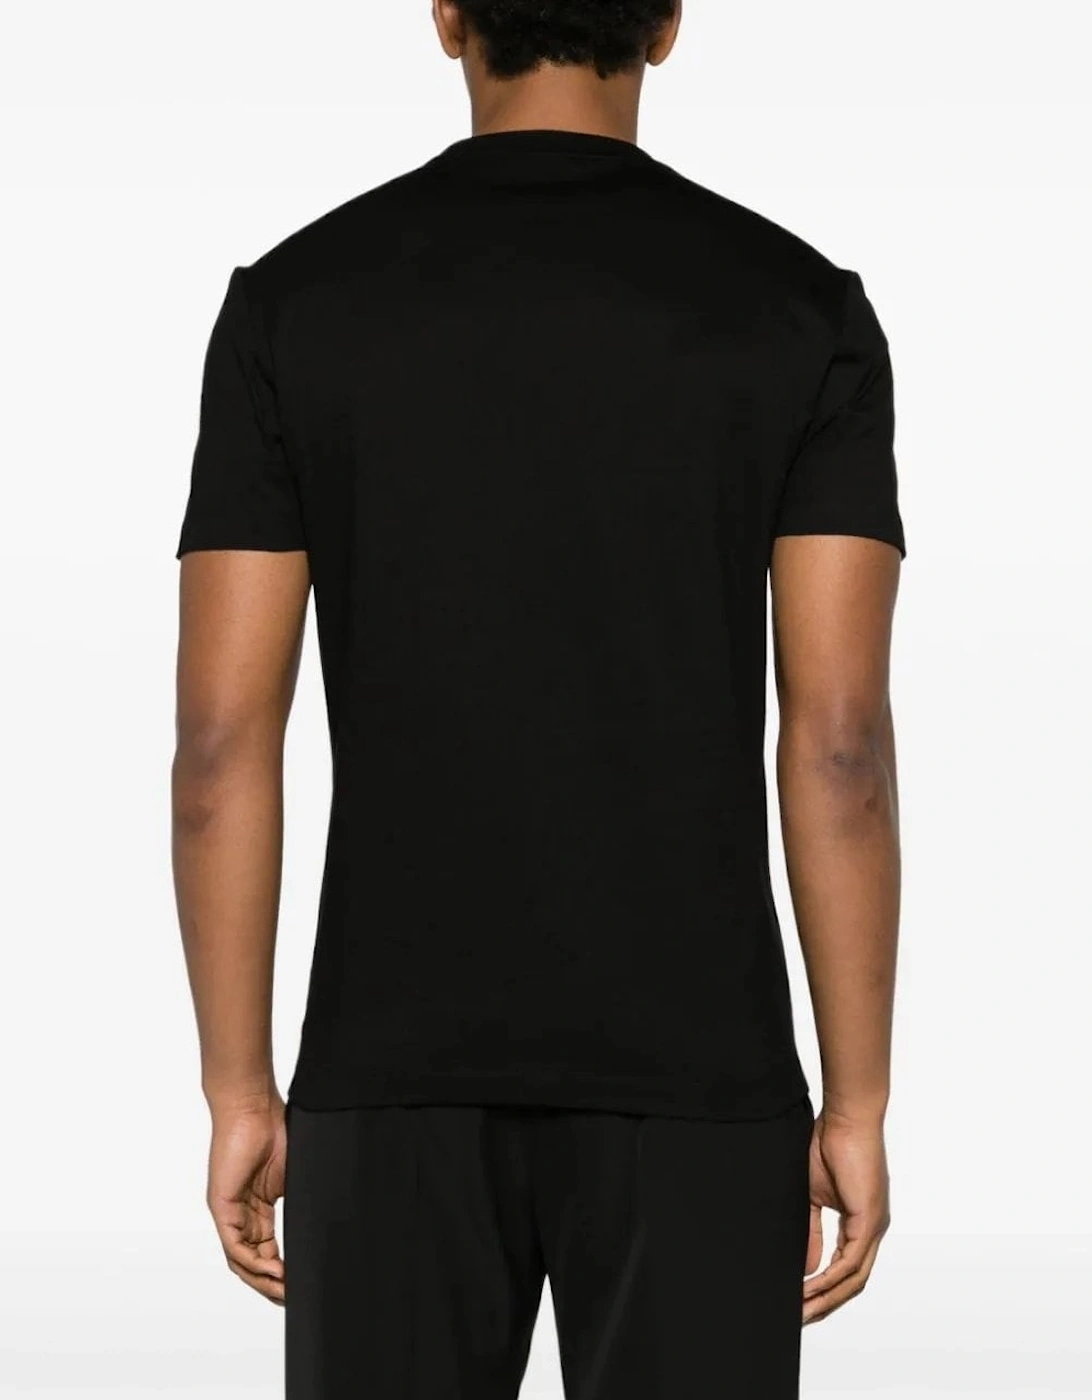 Medusa Compact Cotton T-shirt Black